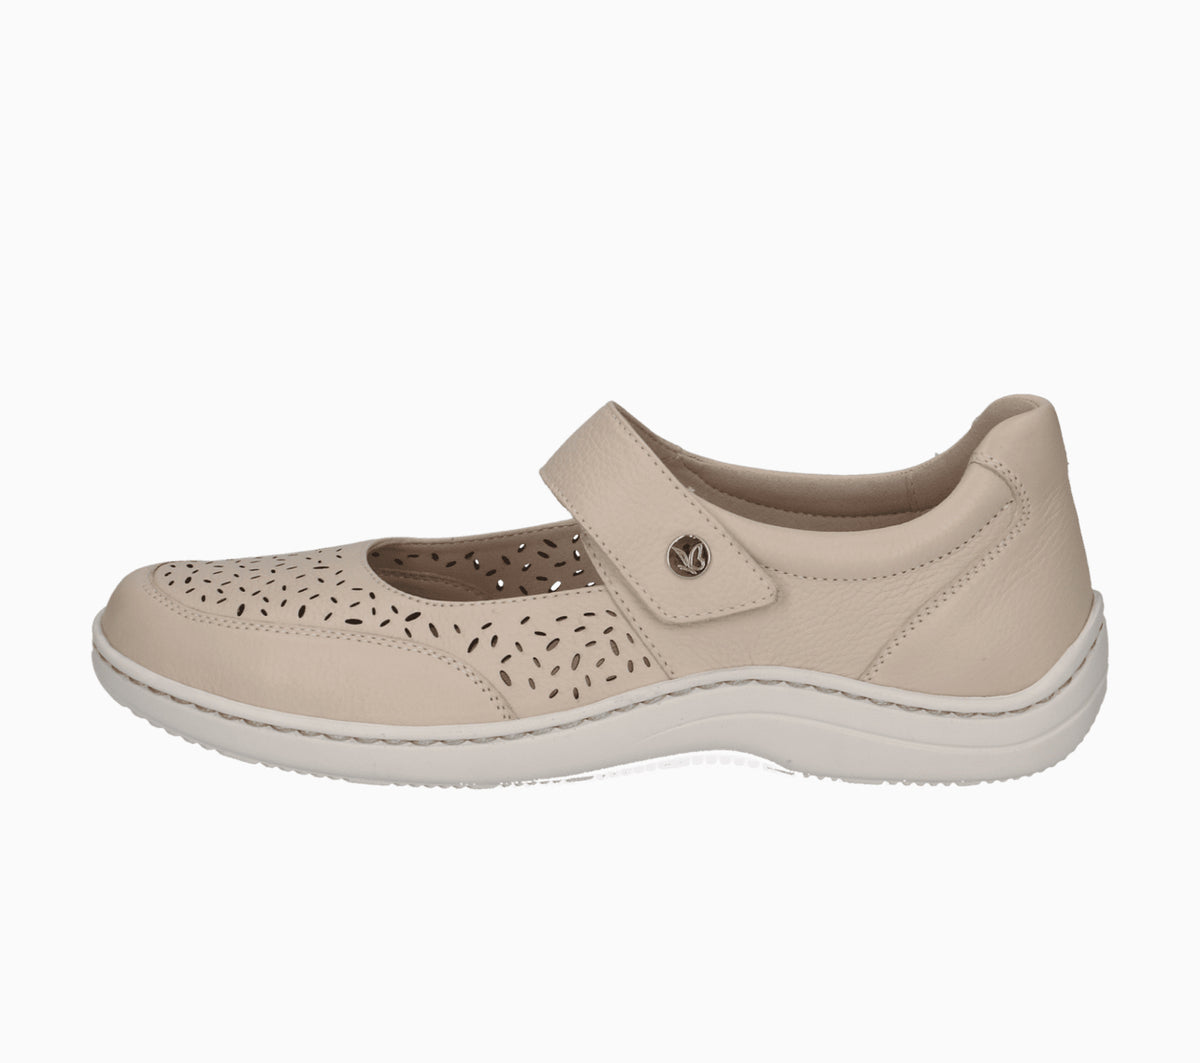 Caprice - 22156 Cream Pref Shoe